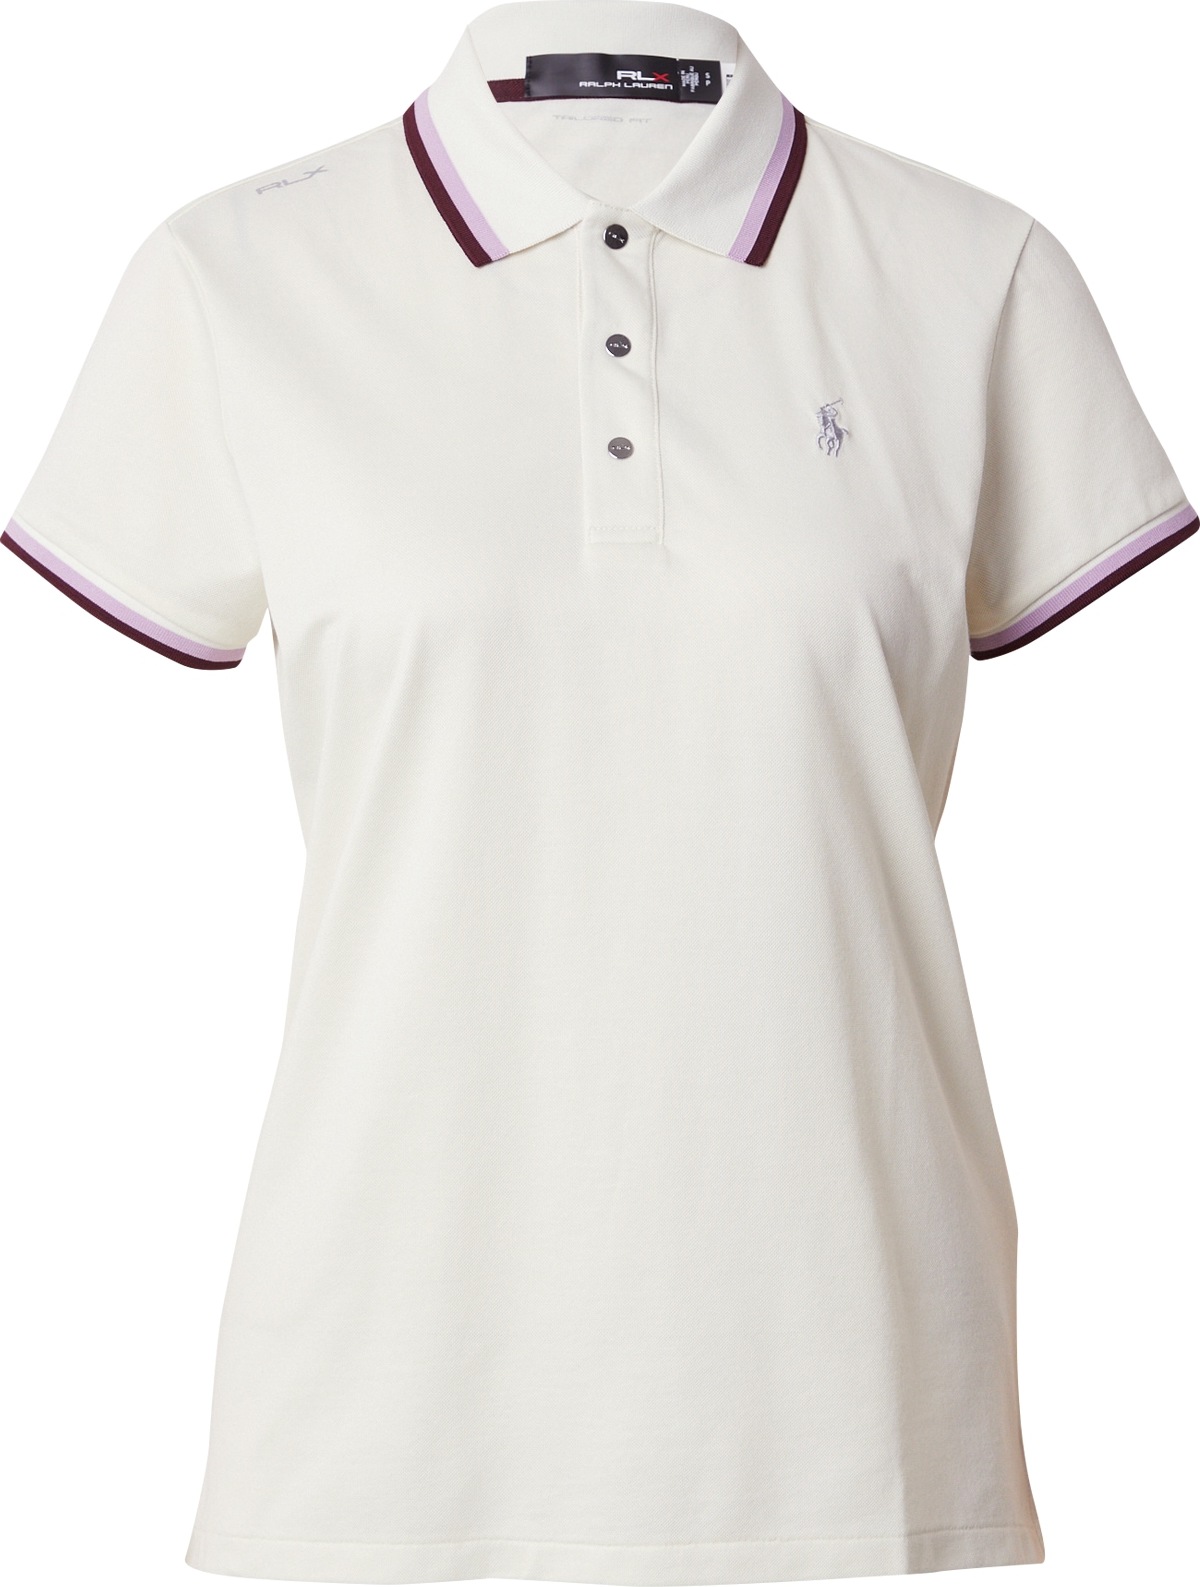 Funkční tričko Polo Ralph Lauren šedá / světle fialová / purpurová / bílá